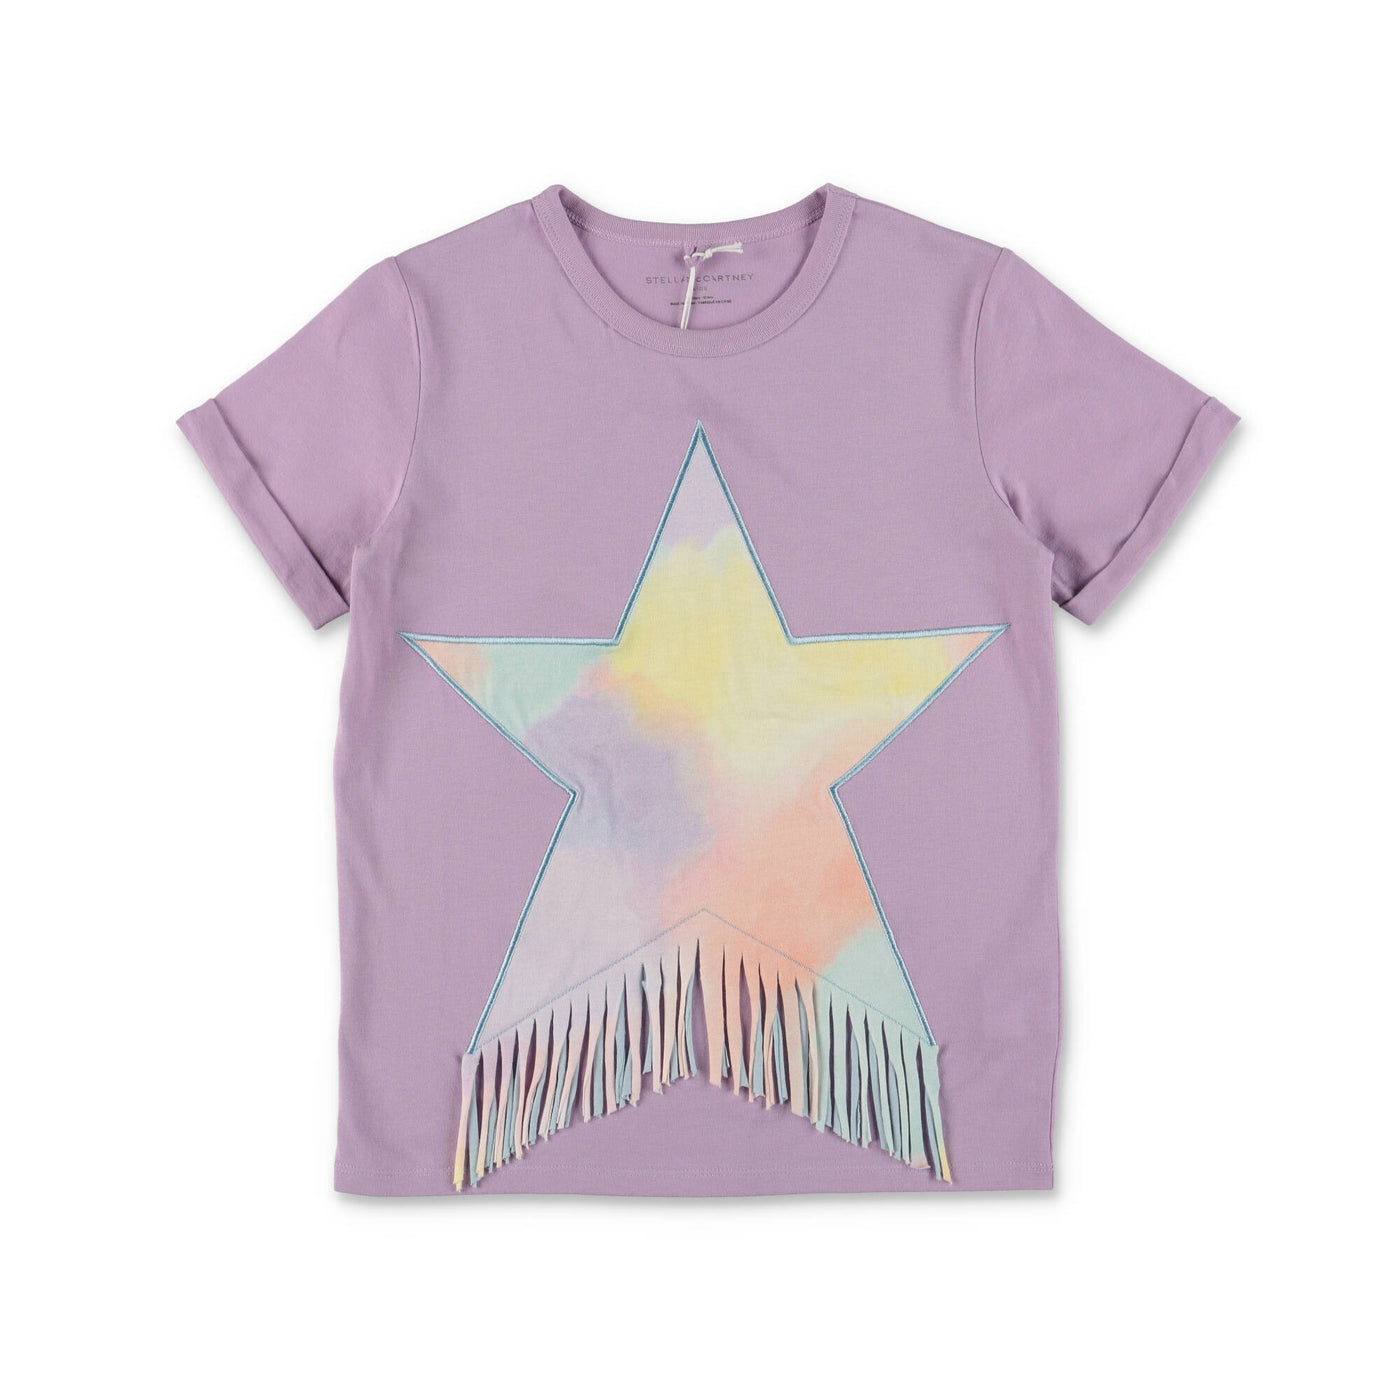 Lilac cotton jersey girl STELLA McCARTNEY t-shirt